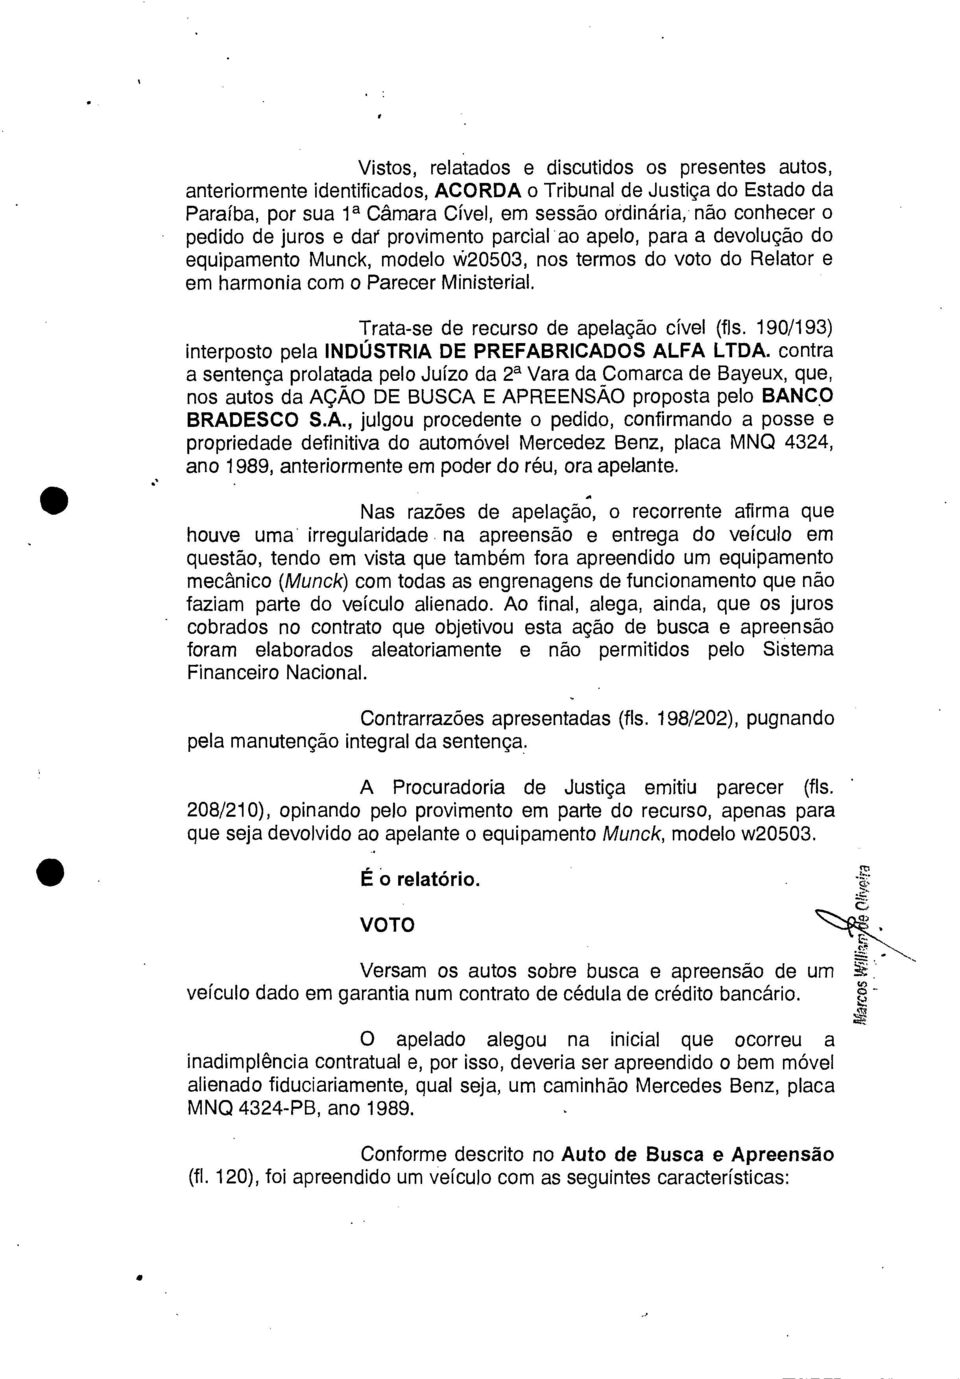 Trata-se de recurso de apelação cível (fls. 190/193) interposto pela INDÚSTRIA DE PREFABRICADOS ALFA LTDA.